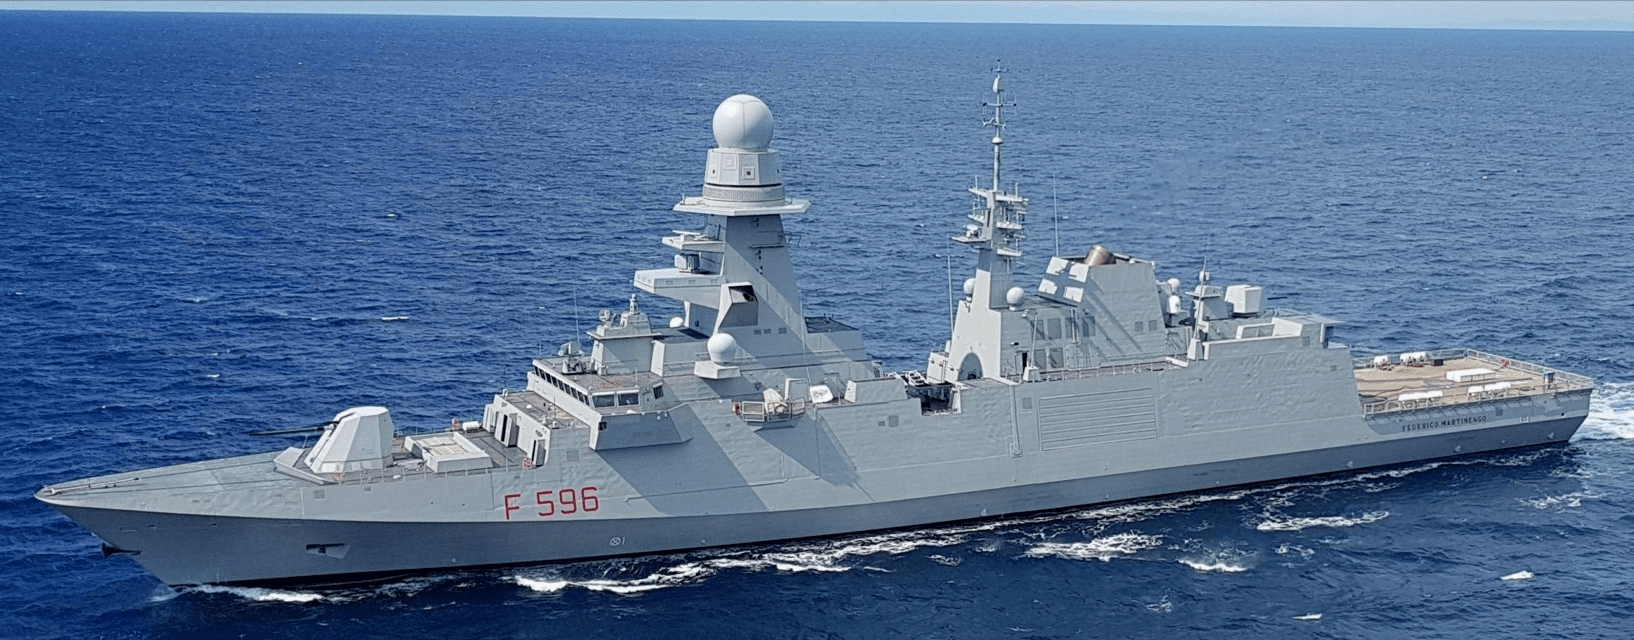 世界护卫舰鉴赏11——贝尔加米尼级护卫舰(fremm意大利版)